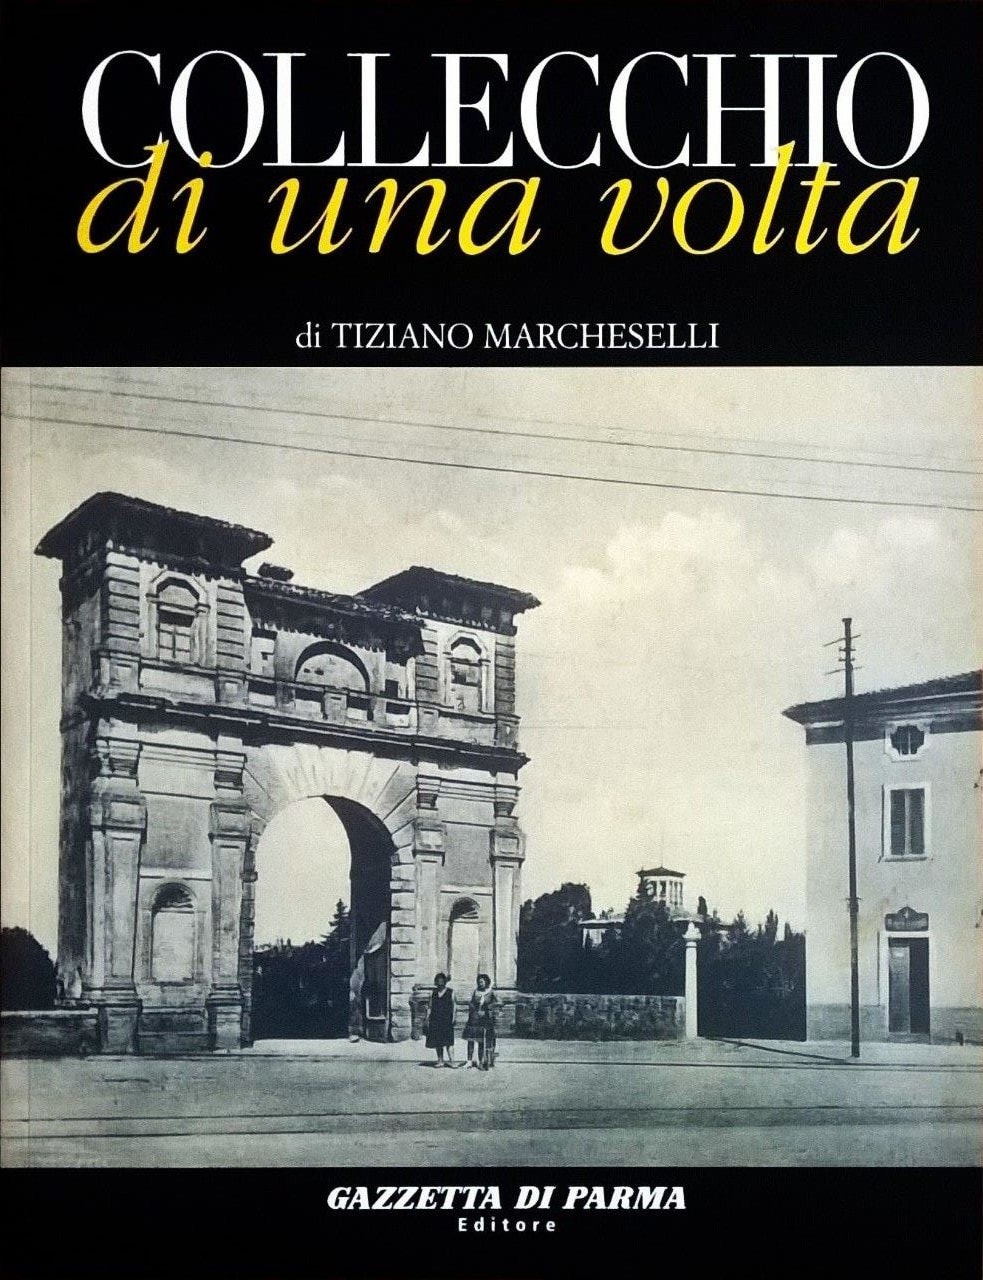 Tiziano Marcheselli, Collecchio di una volta, Parma, Gazzetta di Parma Editore (Grafiche Step), 2008, prefazione di Giuseppe Romanini